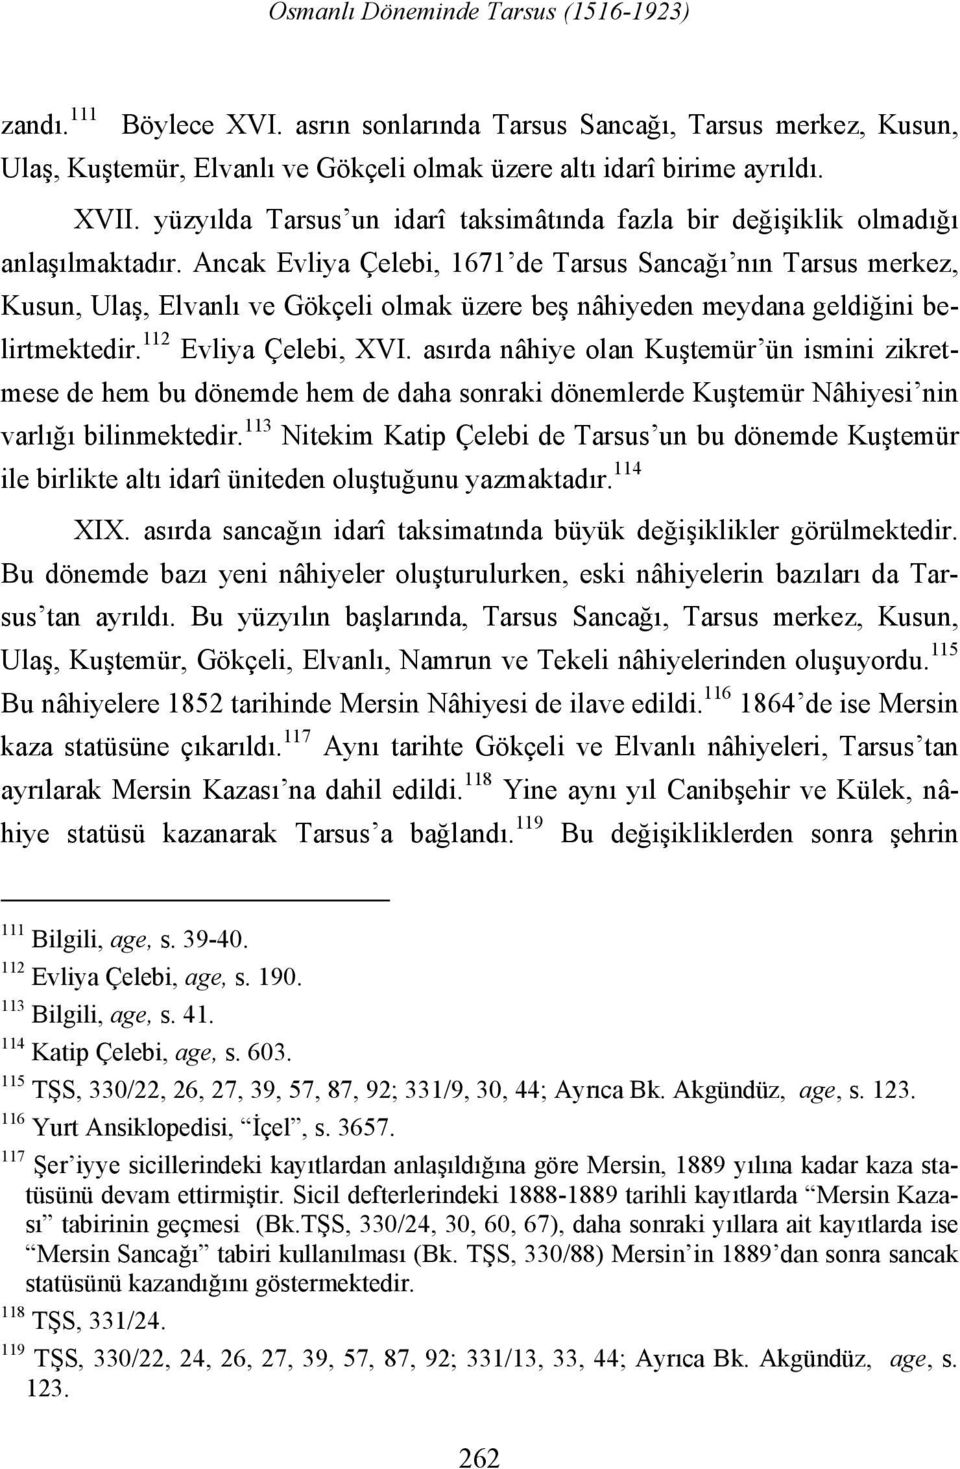 Ancak Evliya Çelebi, 1671 de Tarsus Sancağı nın Tarsus merkez, Kusun, Ulaş, Elvanlı ve Gökçeli olmak üzere beş nâhiyeden meydana geldiğini belirtmektedir. 112 Evliya Çelebi, XVI.